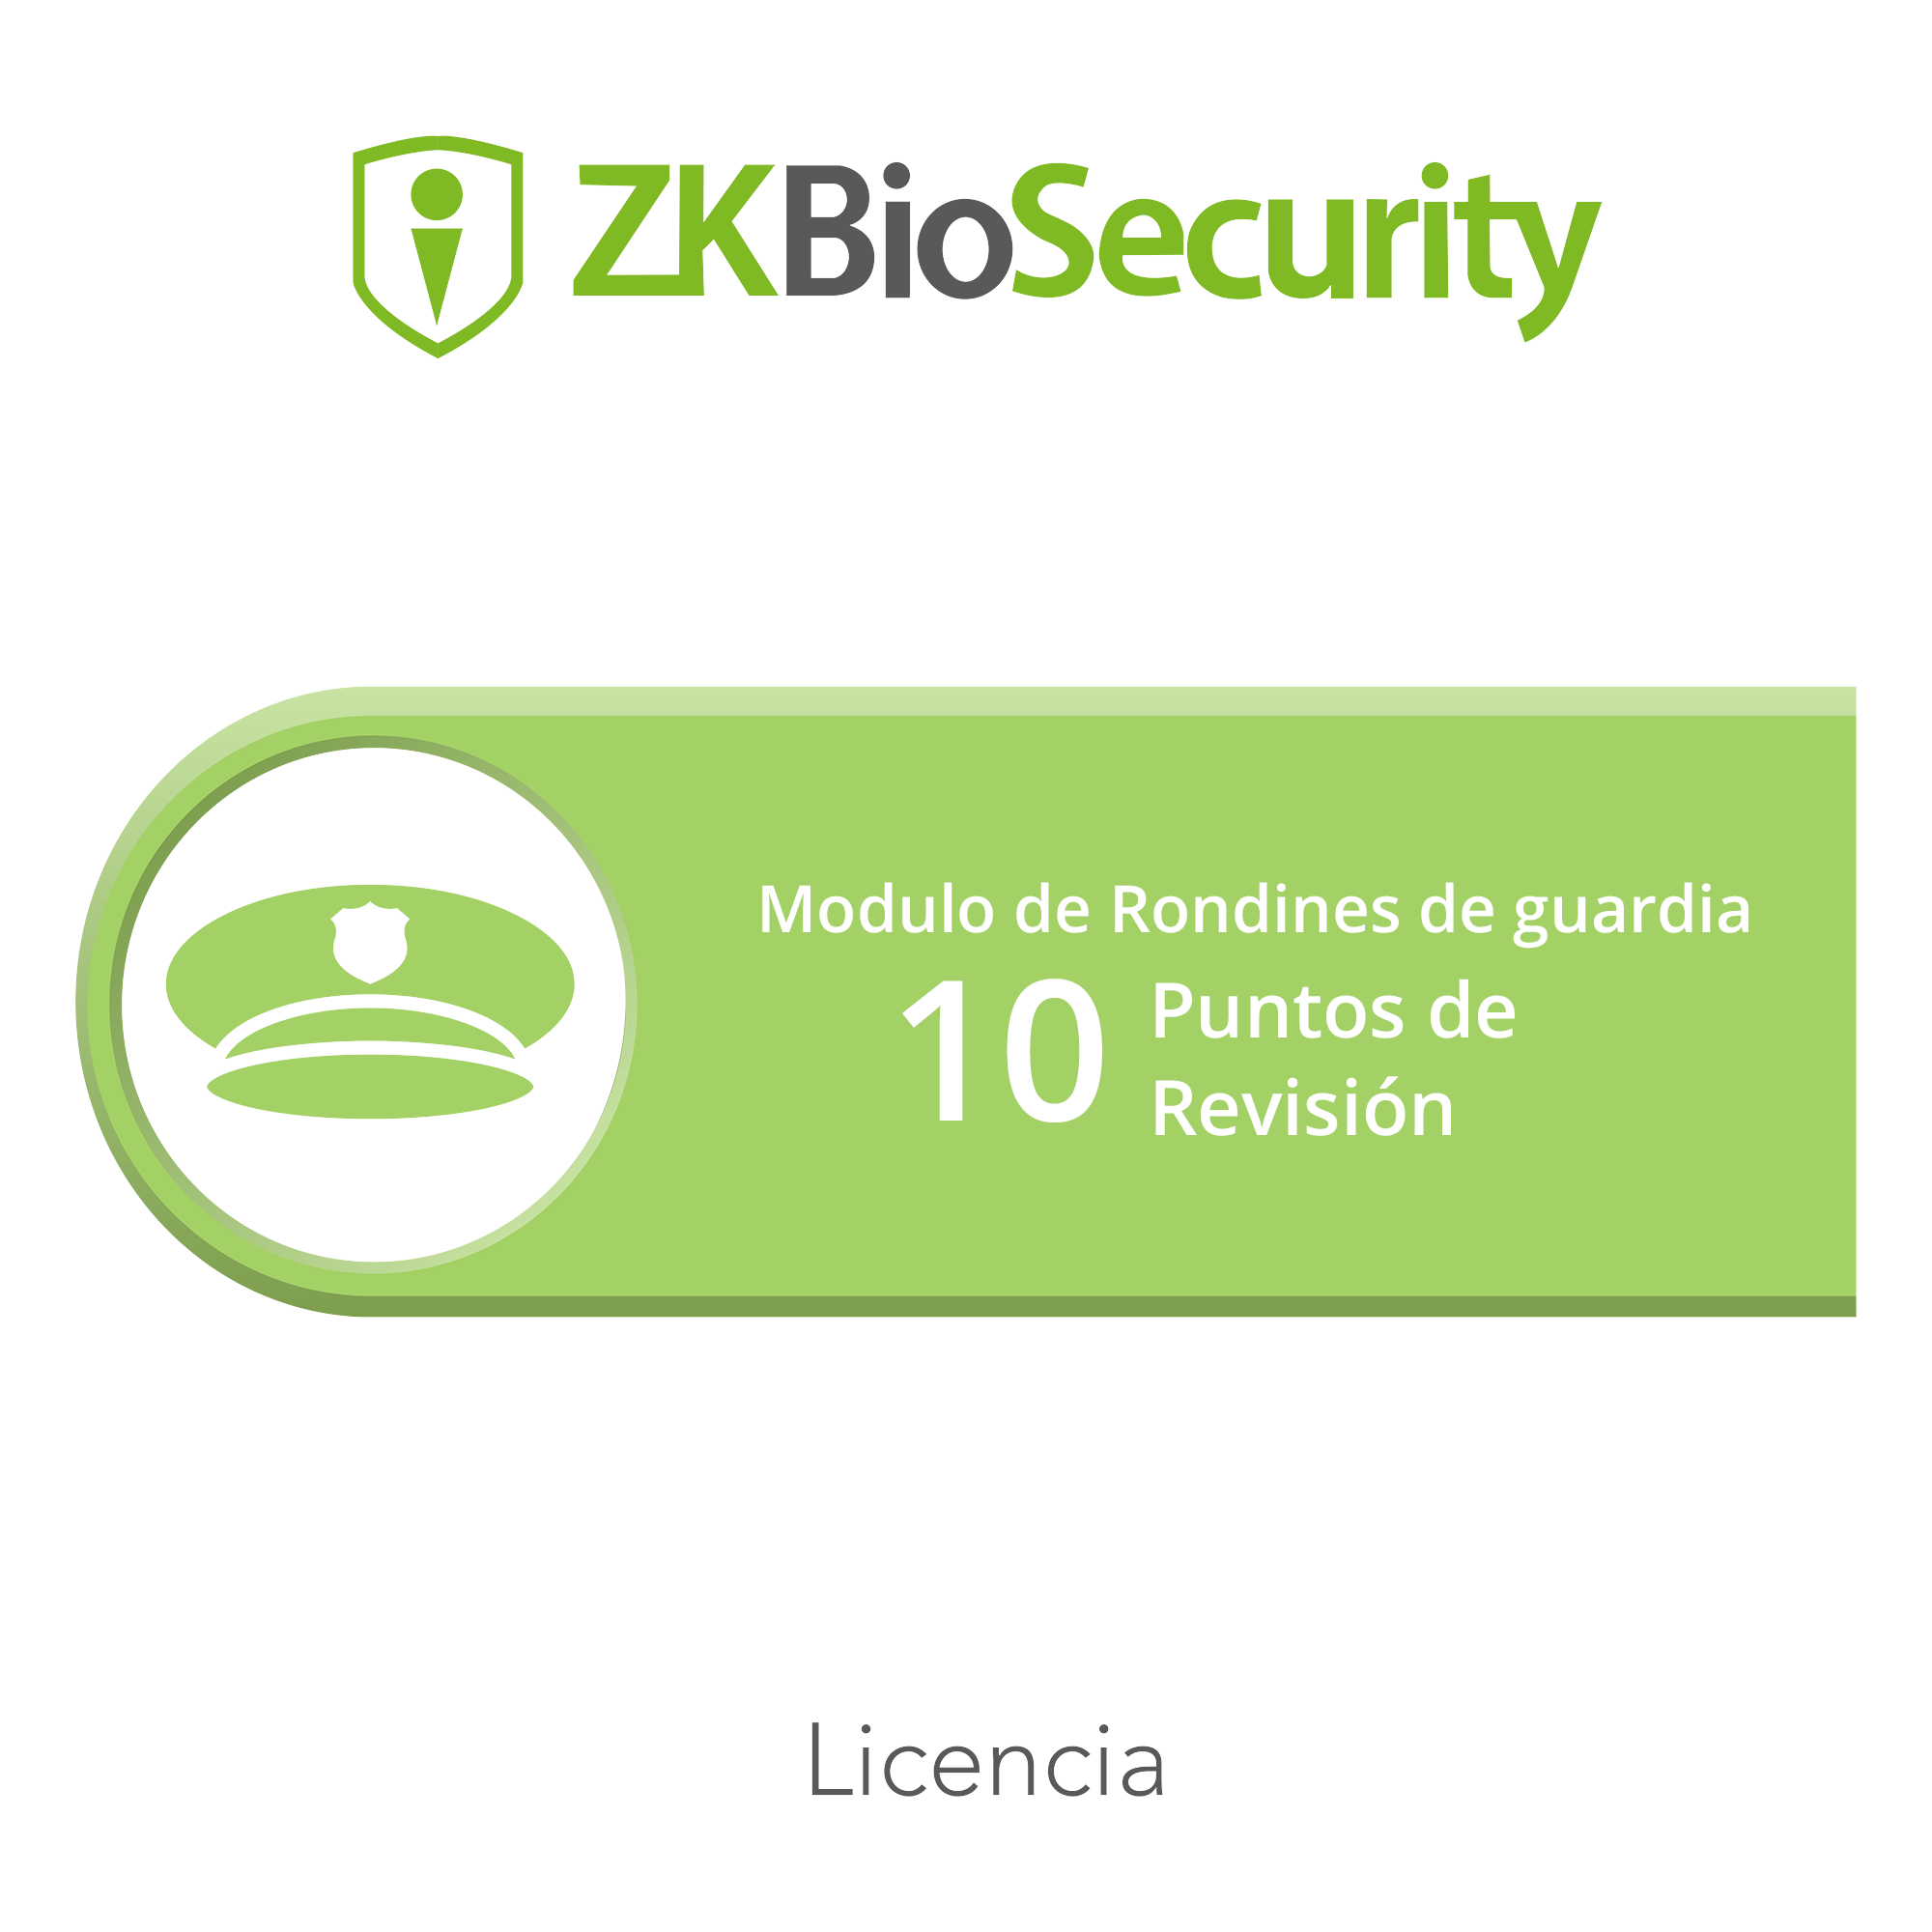 Licencia para ZKBiosecurity para modulo de rondines de guardia hasta 10 puntos de revision